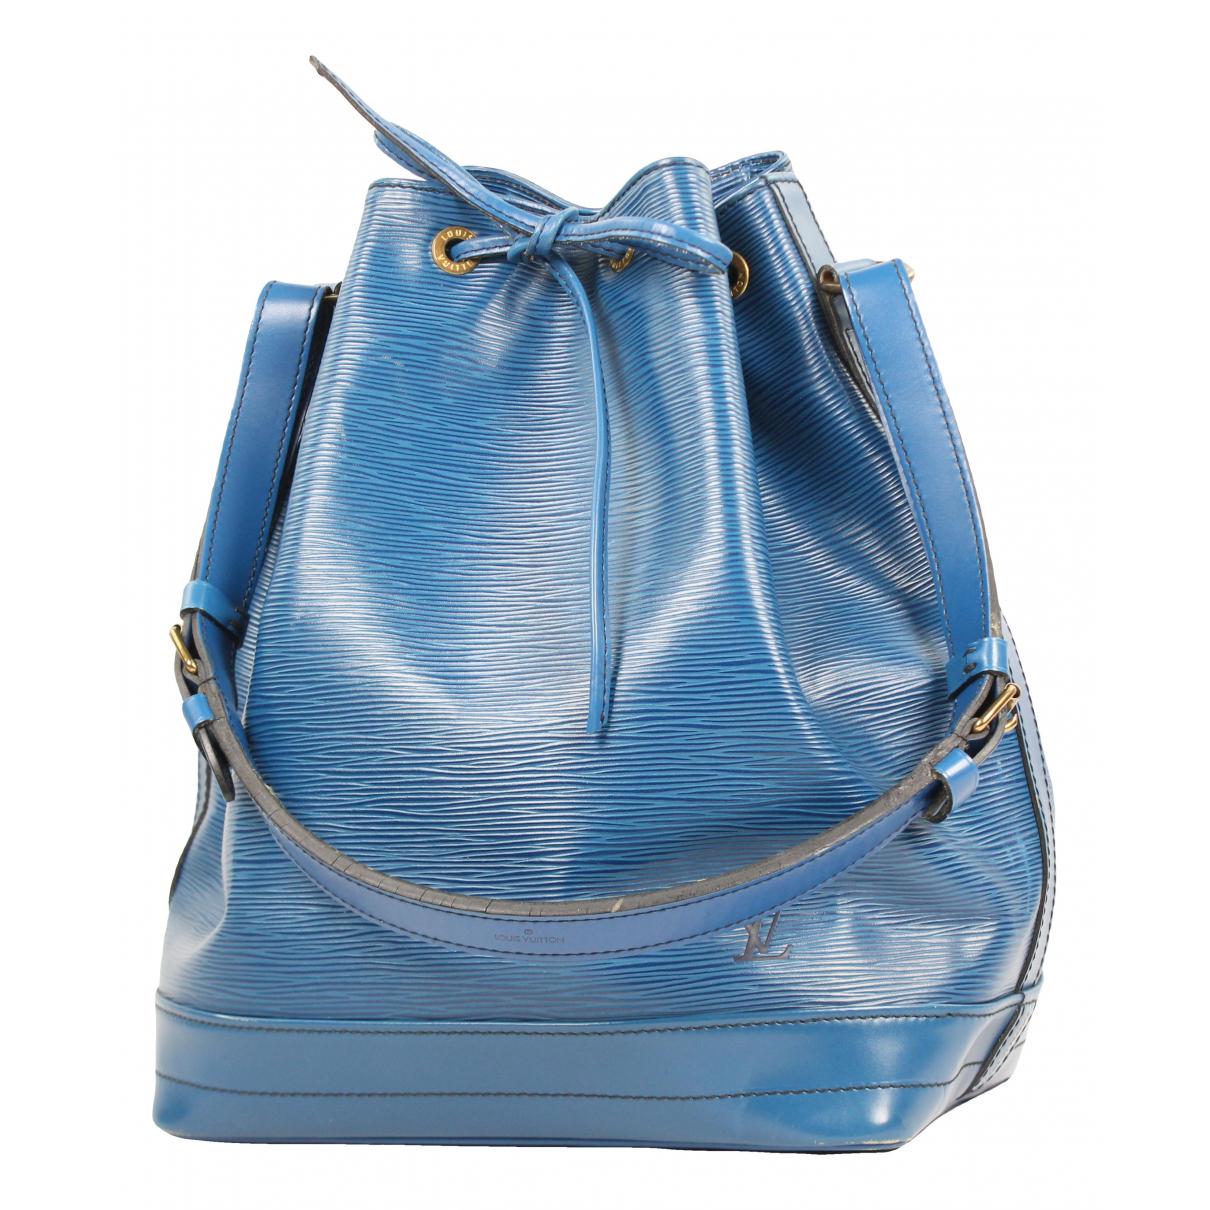 blue Louis Vuitton Bags for Women - Vestiaire Collective